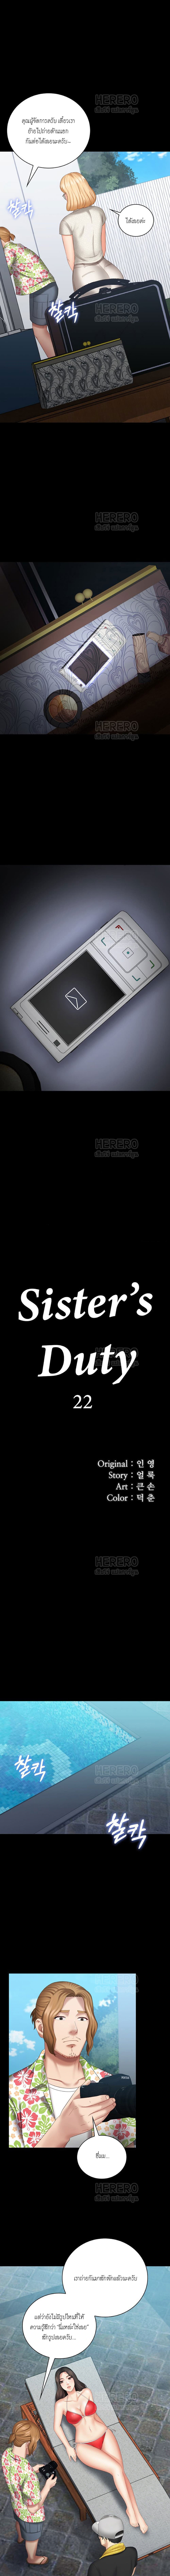 Sister’s Duty 22 (1)